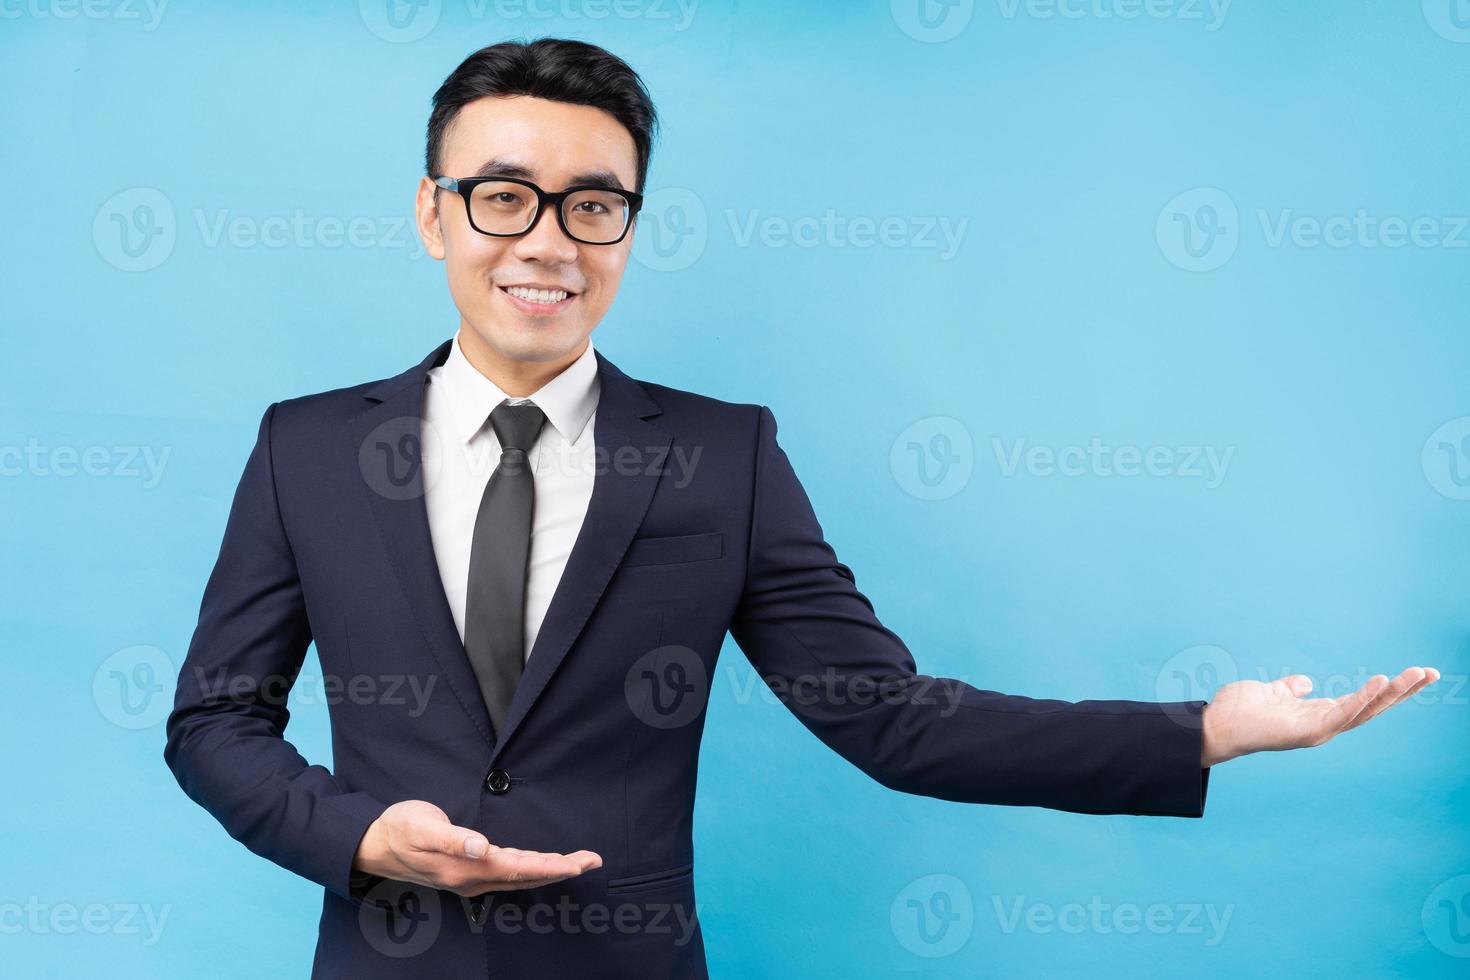 ritratto di uomo d'affari asiatico che indossa tuta su sfondo blu foto